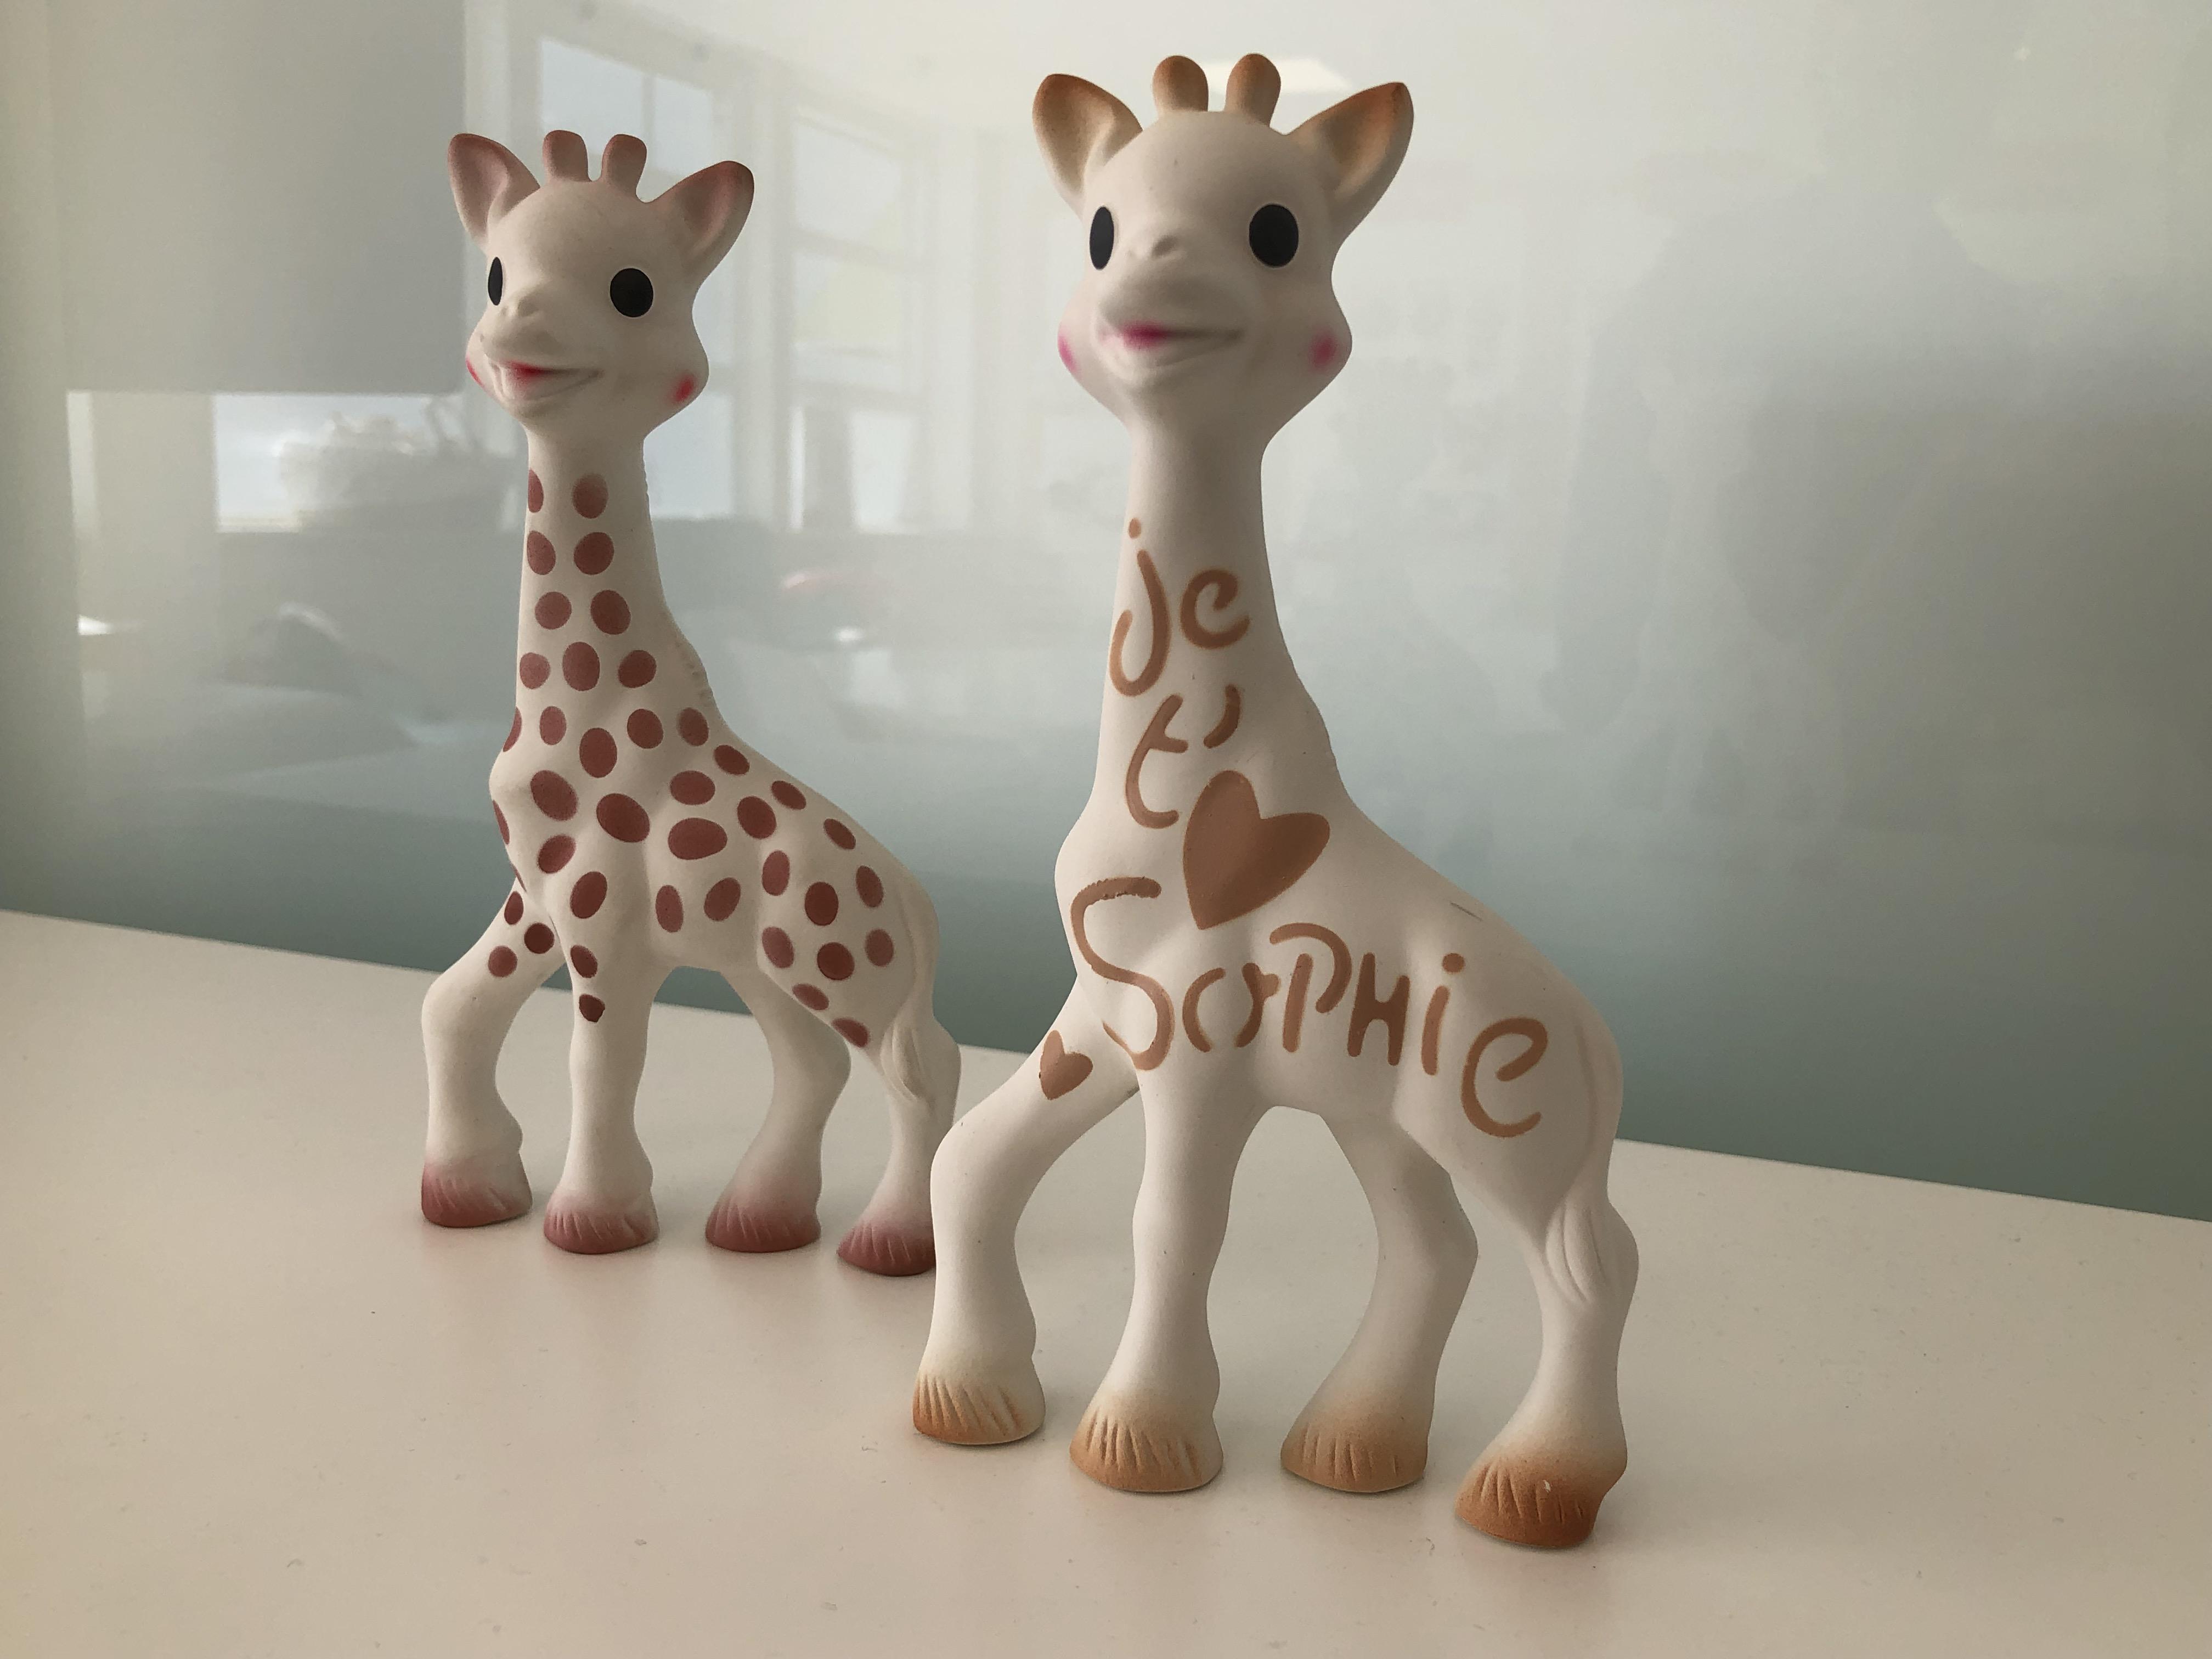 Bassin annécien : pourquoi Sophie la Girafe est-elle un succès